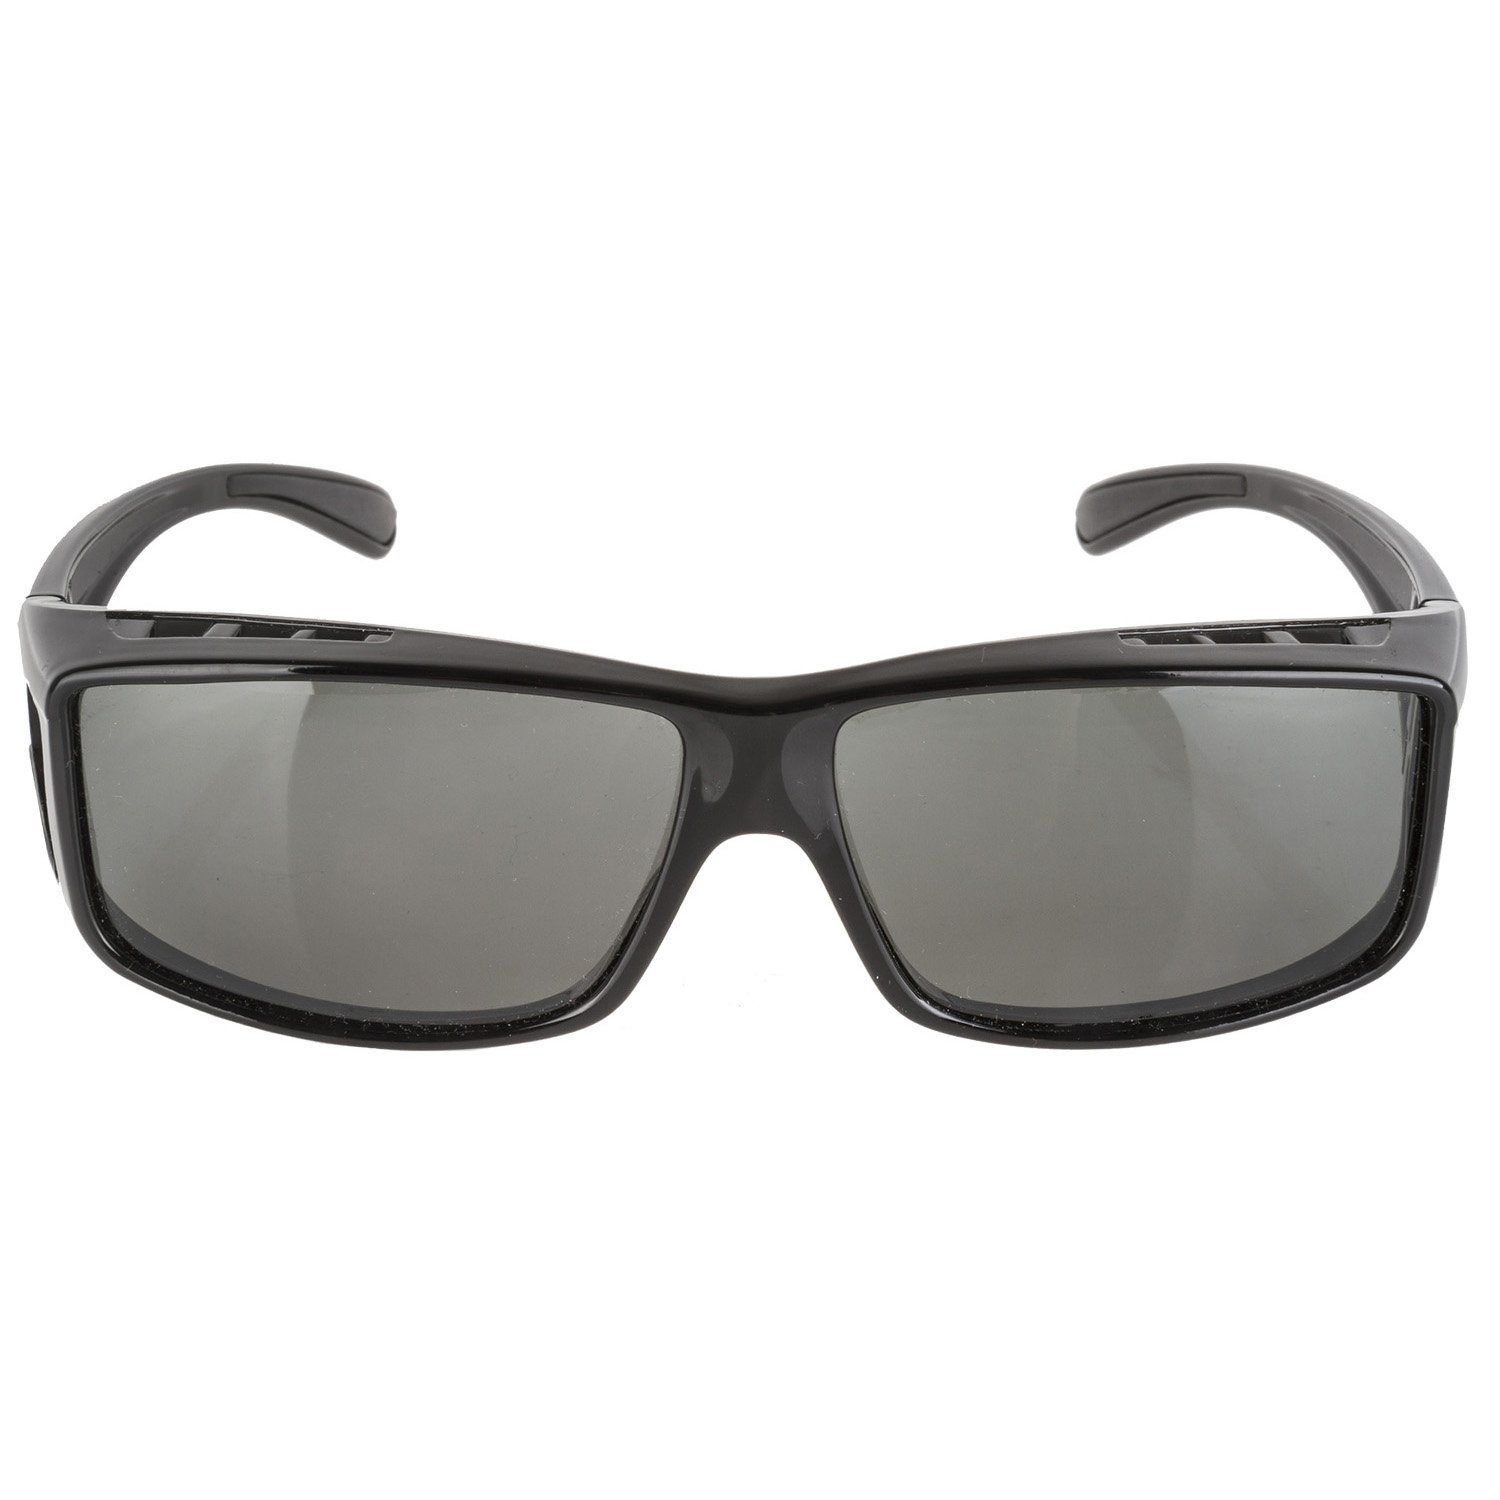 фото Черные солнцезащащитные очки rayon fit mighty,поляризующие , 5-710903